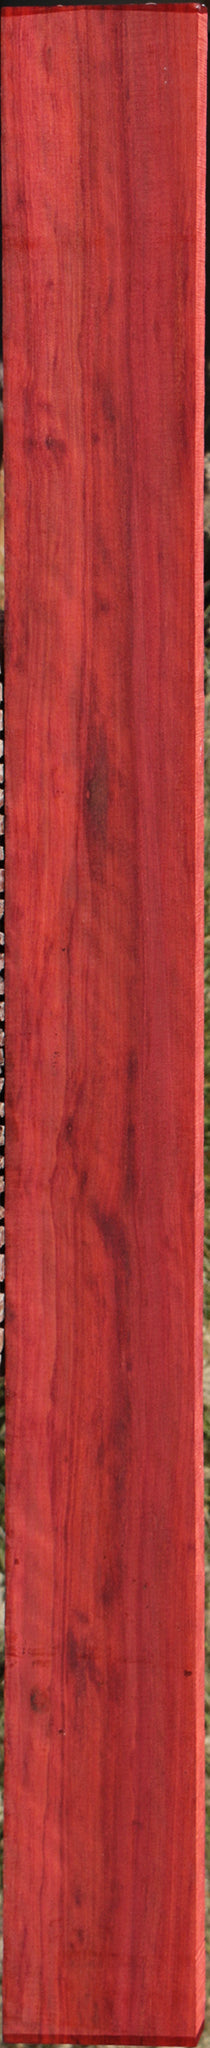 Fiddleback Redheart Lumber